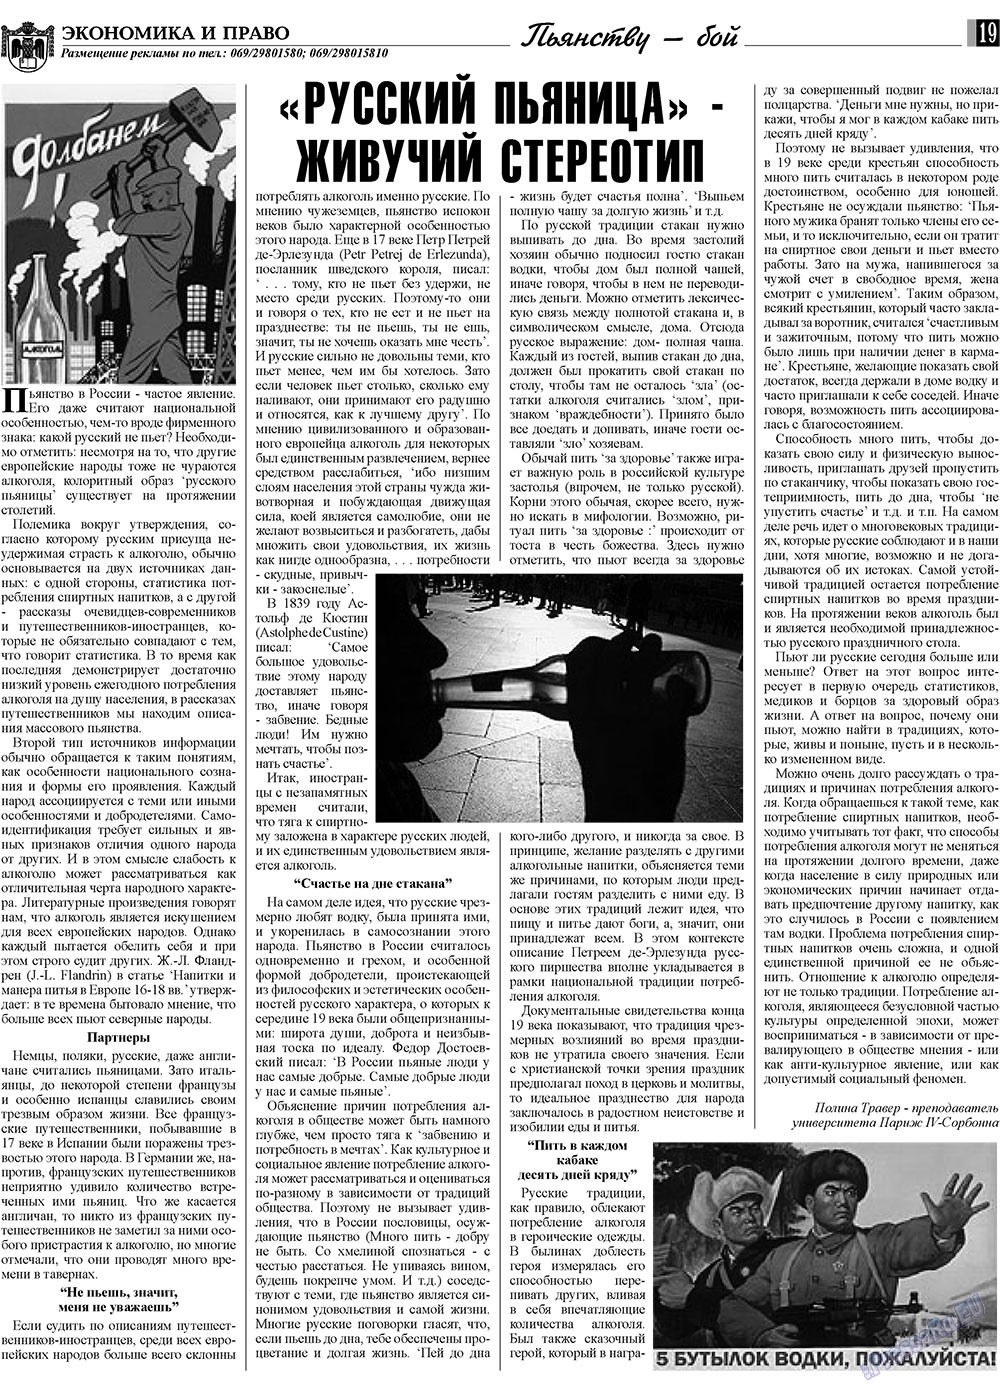 Экономика и право, газета. 2009 №1 стр.19